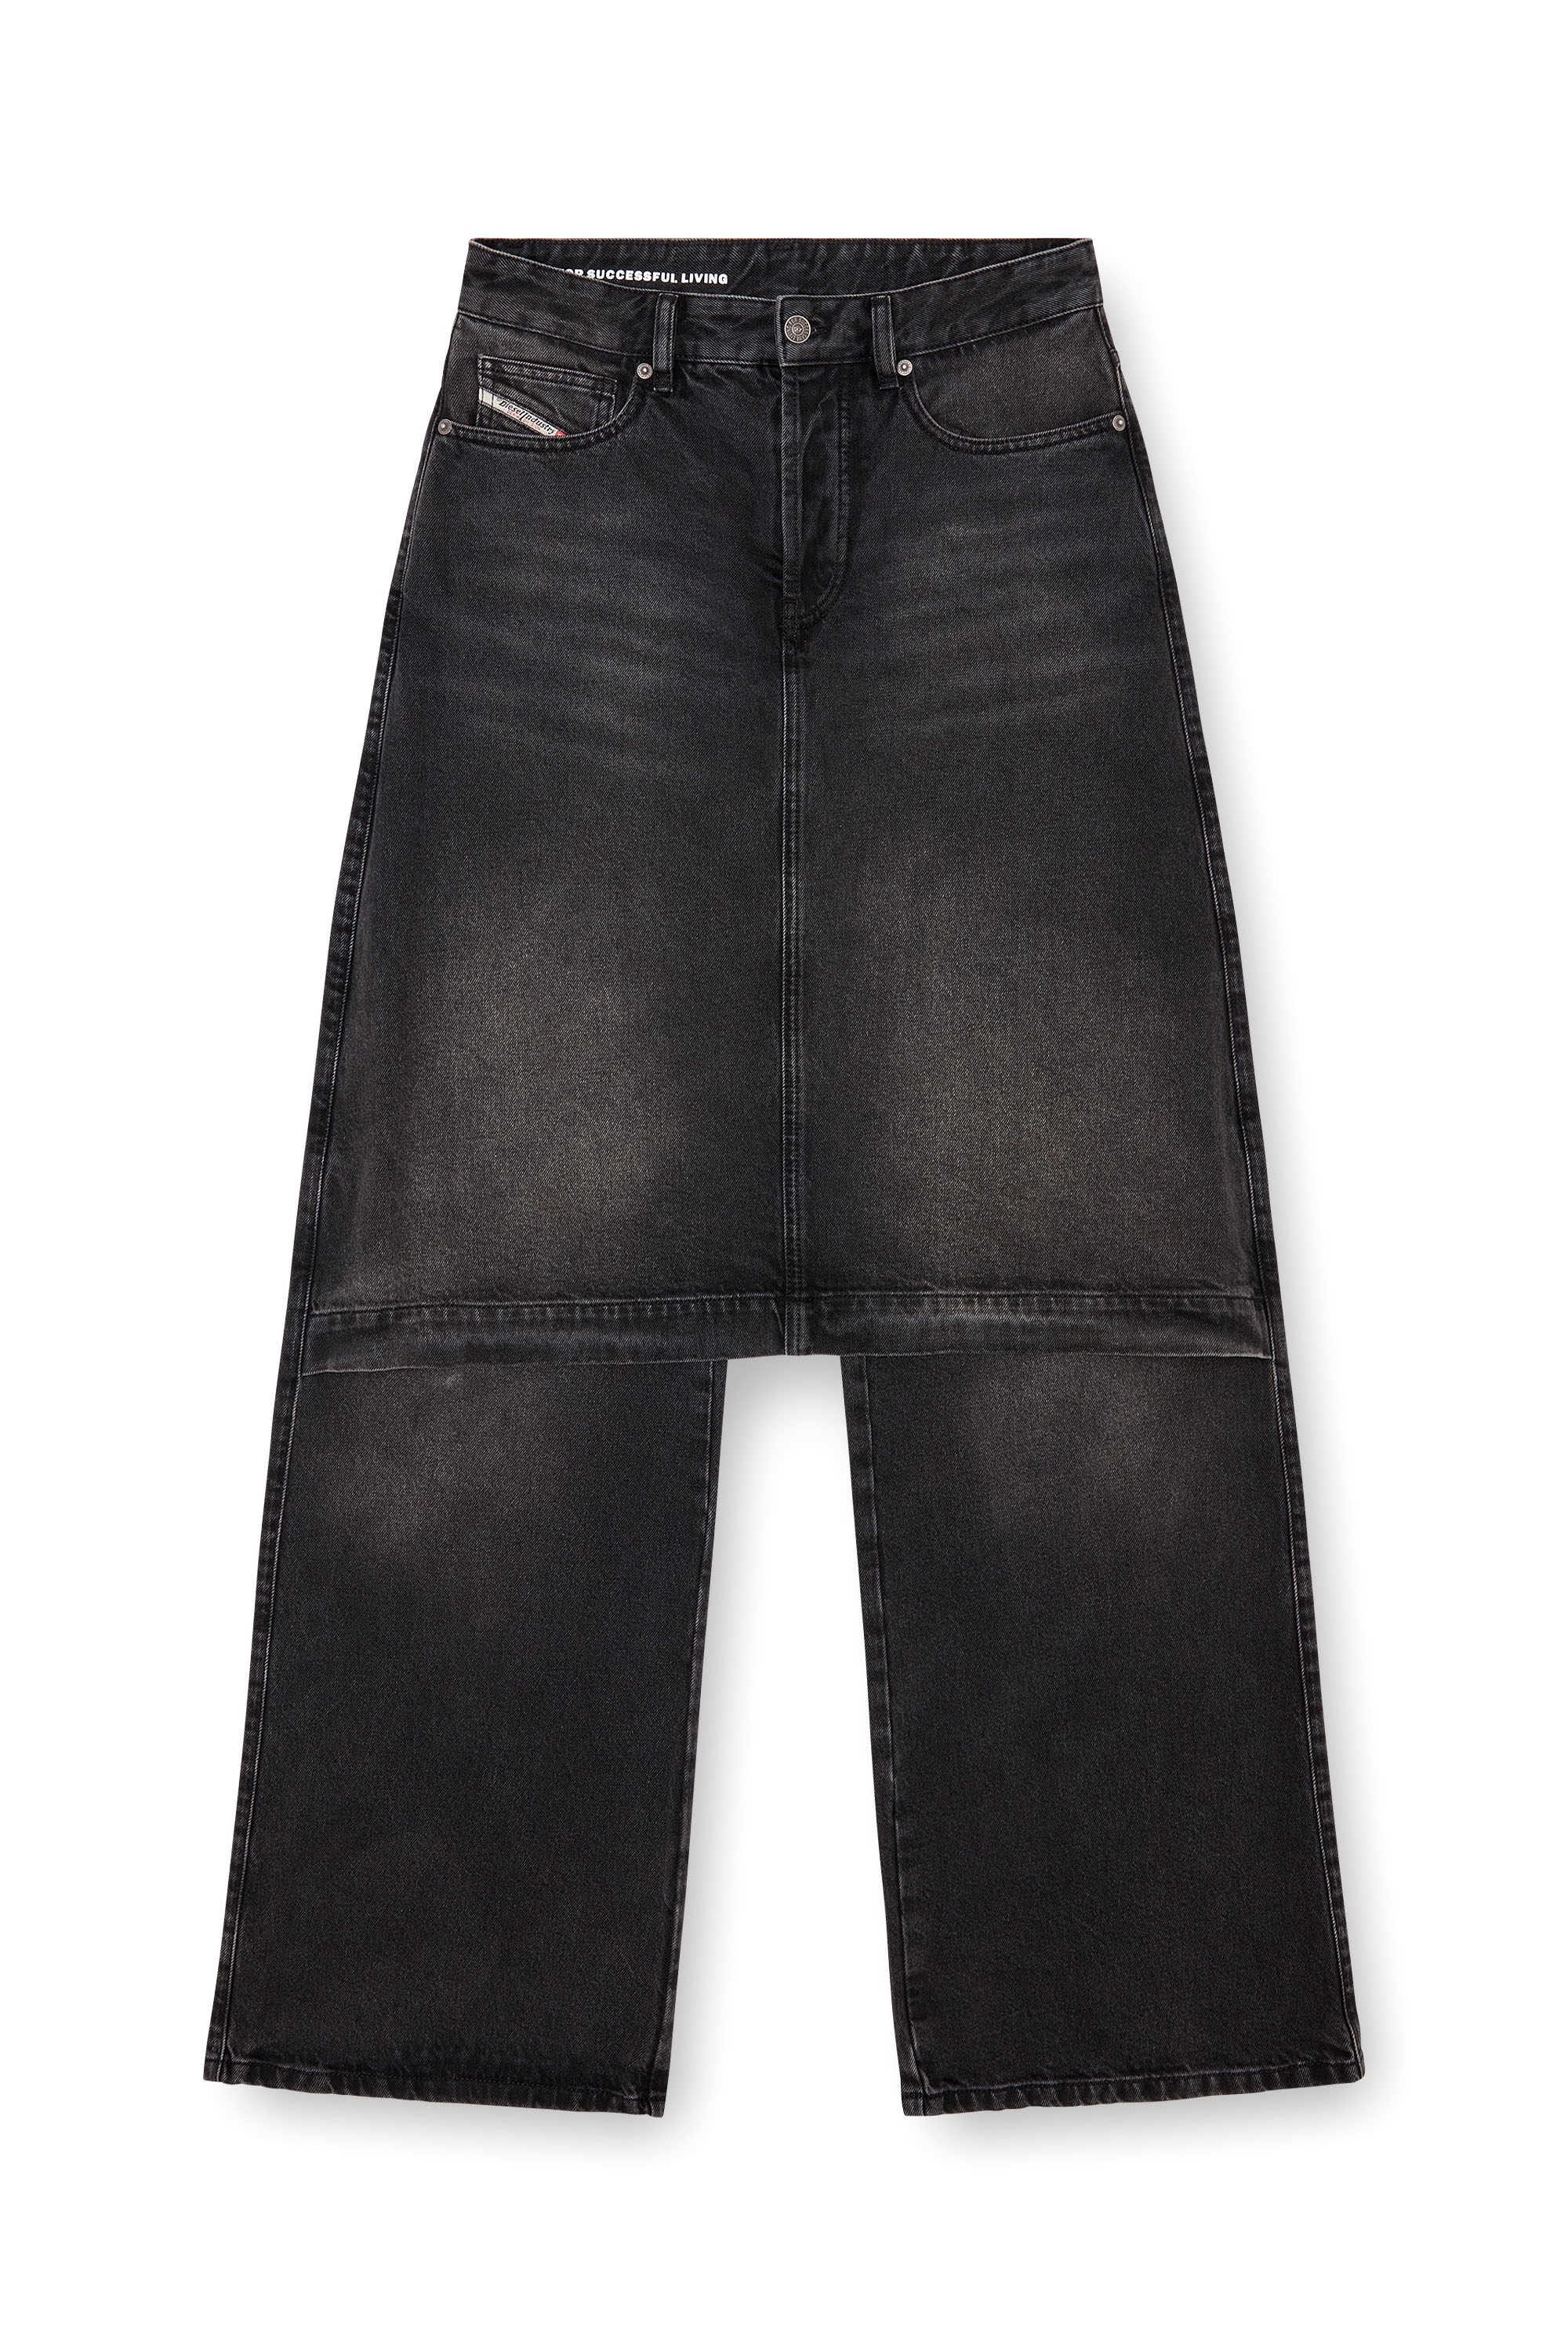 Diesel - Straight Jeans D-Syren 0CBDG, Mujer Straight Jeans - D-Syren in Negro - Image 4